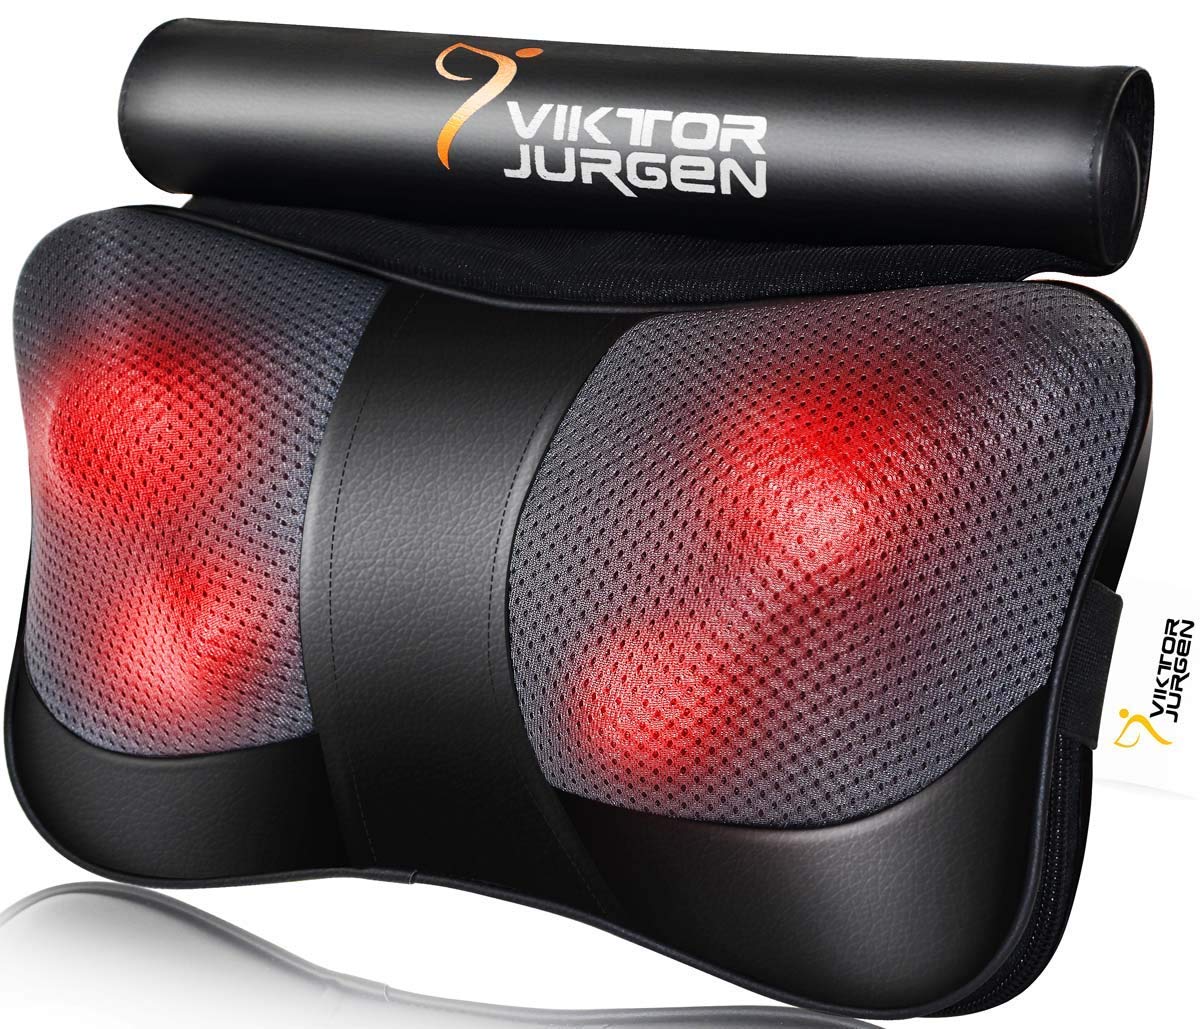 VIKTOR JURGEN Neck Massage Pillow Shiatsu Deep Kneading Shoulder Back and Foot Massager with Heat-Relaxation Gifts for Women/Men